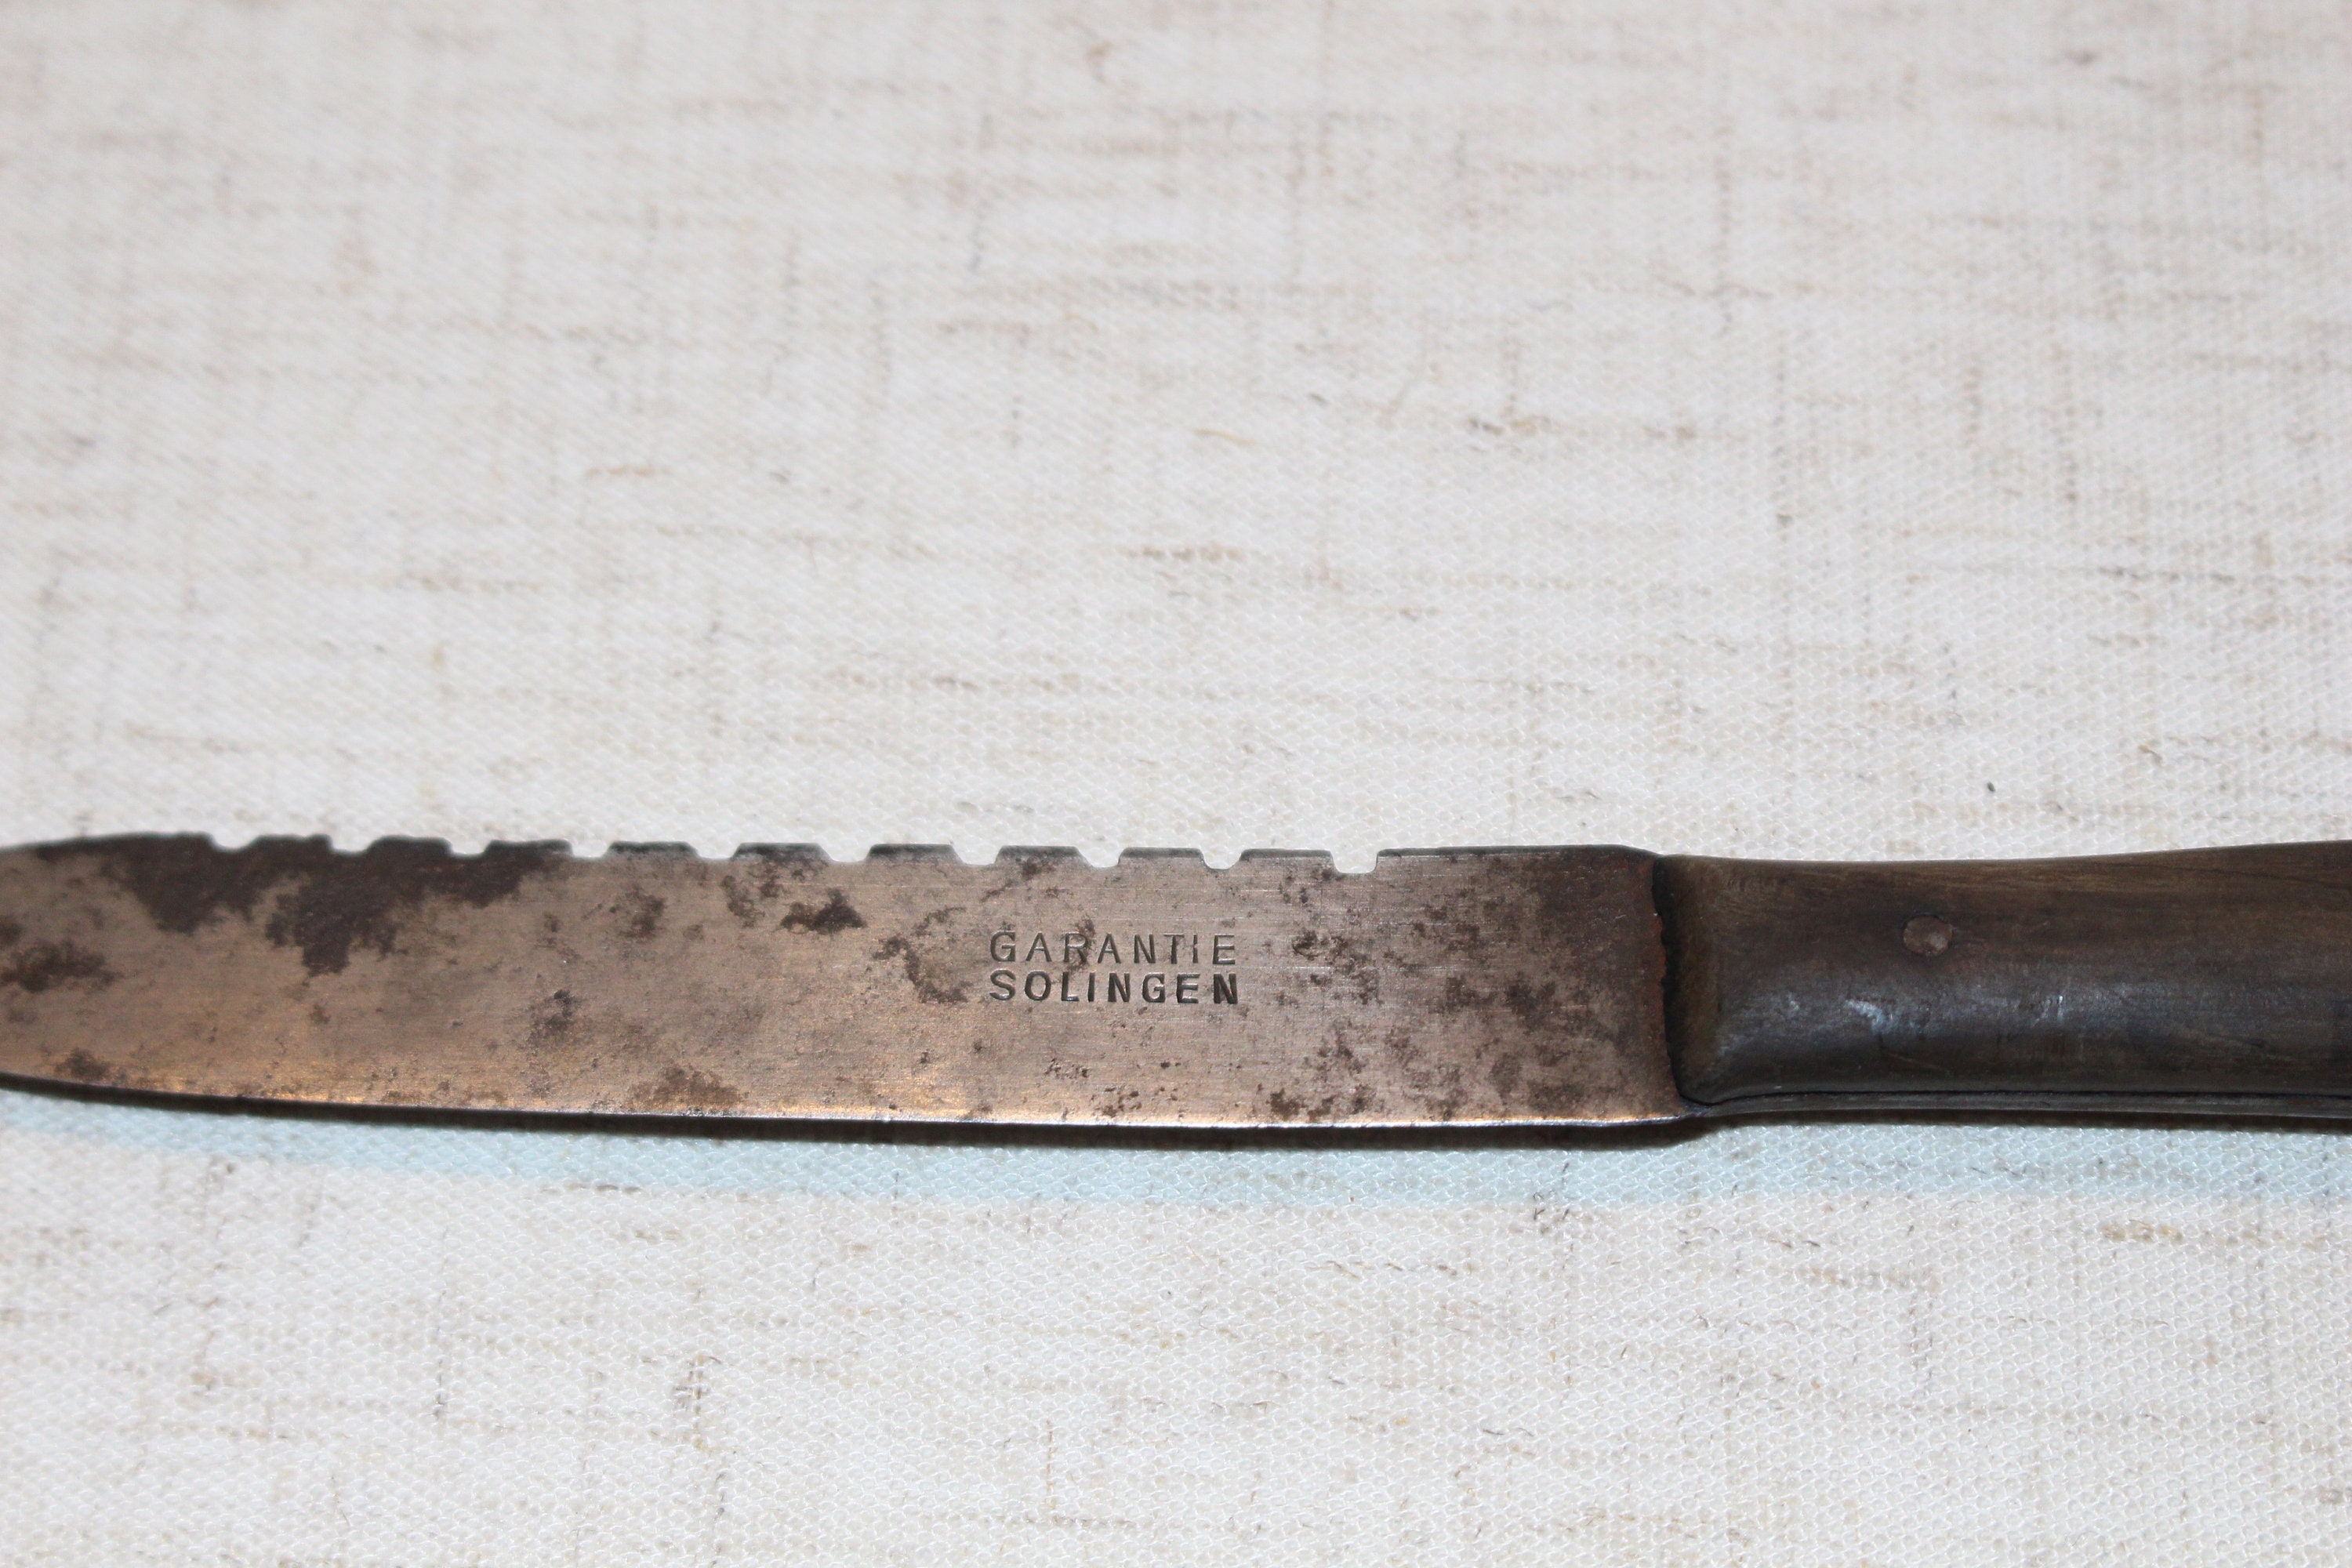 Rare Solingen Knife Garantie Solingen German Fillet Knife Vintage